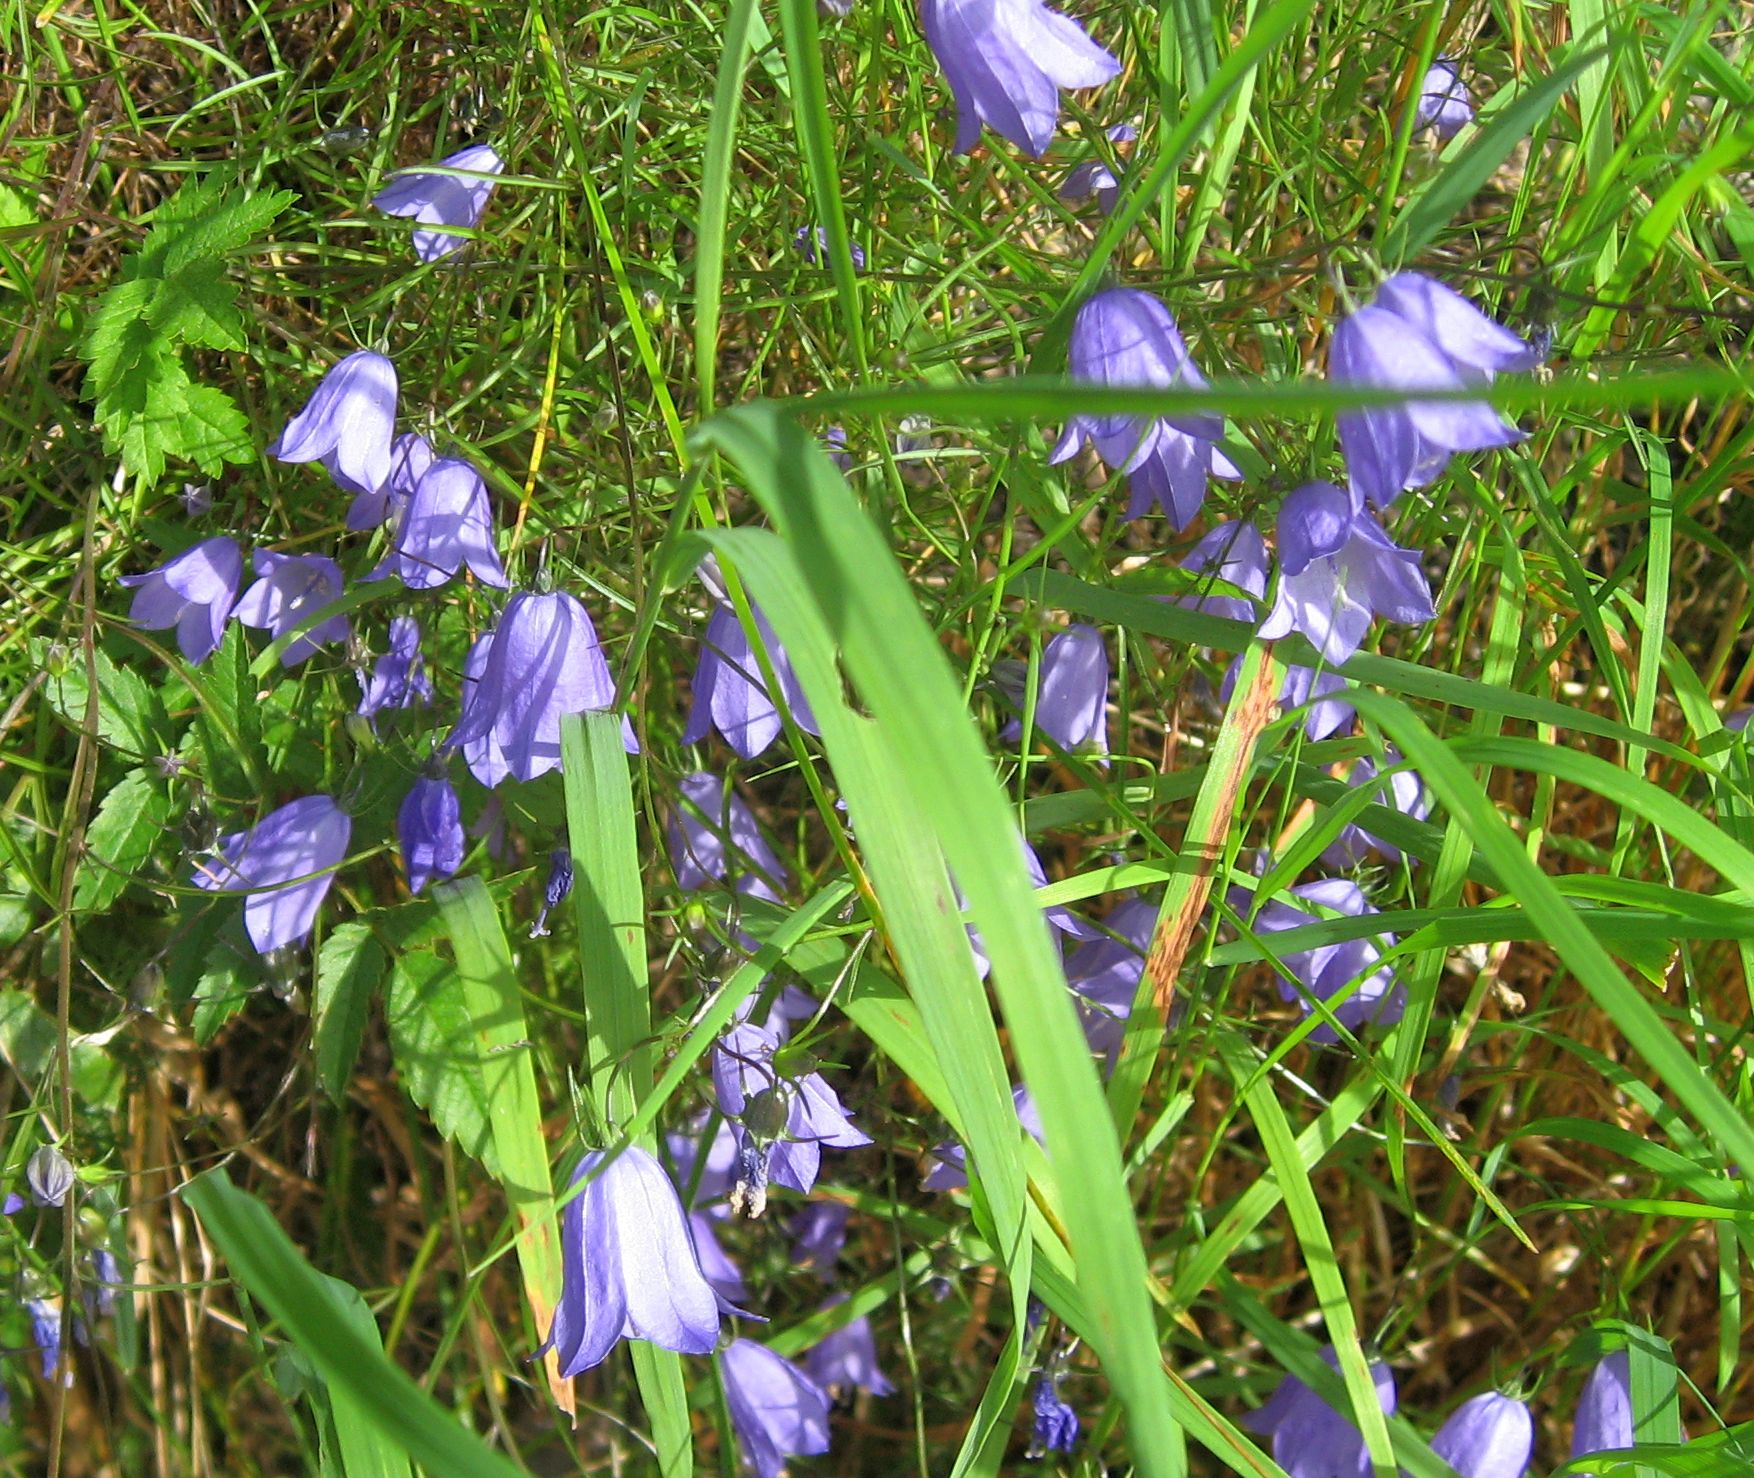 Campanula Rotundifolia / Bluebell / Bluebell Bellflower